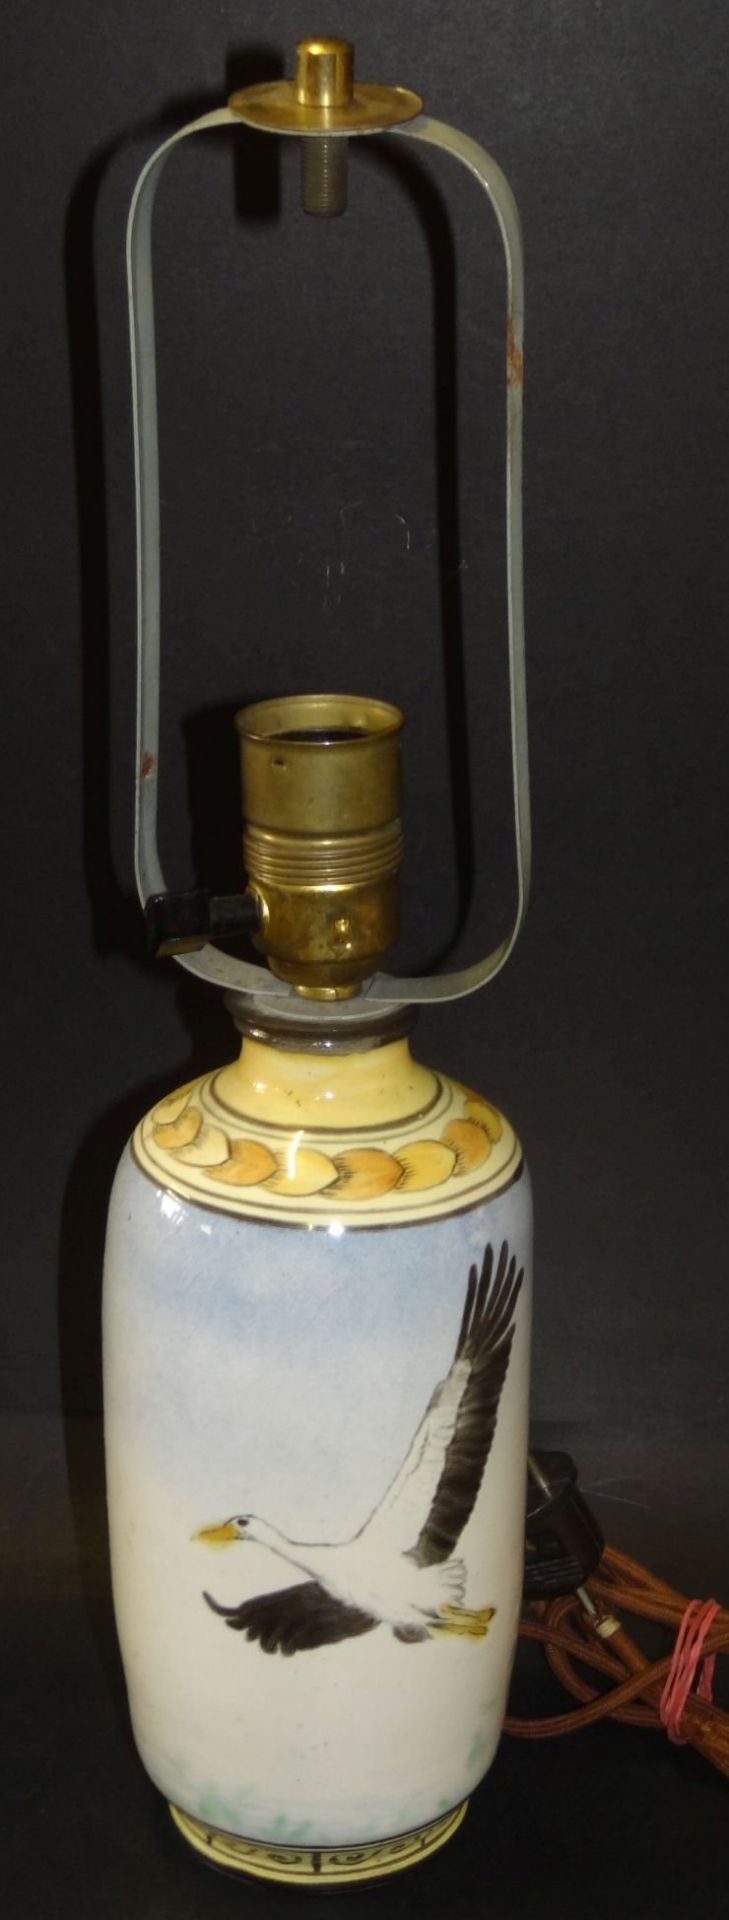 Lampenfuss, bemalt mit Flugenten, unged. Marke, H-Vase 25 cm, über alles 45 cm, - Bild 2 aus 5